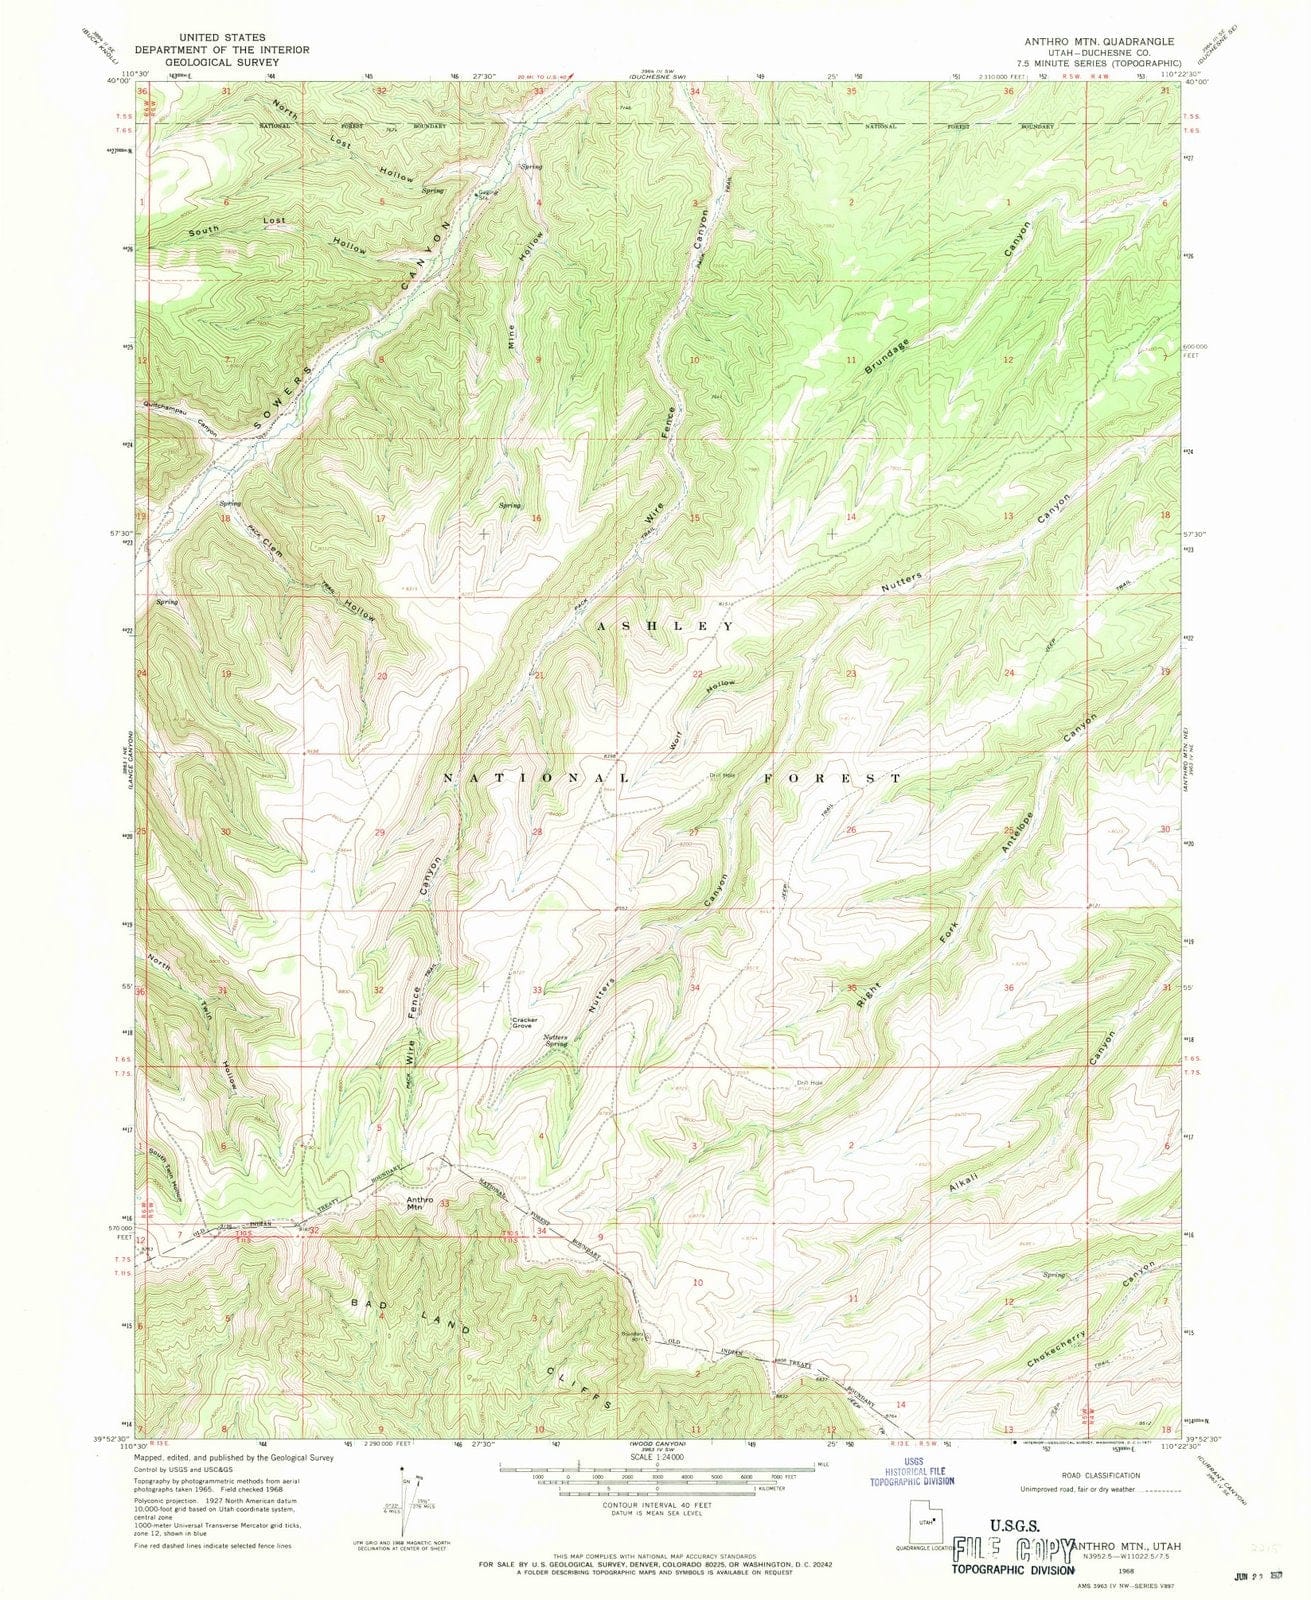 1968 Anthro MTN, UT - Utah - USGS Topographic Map v2